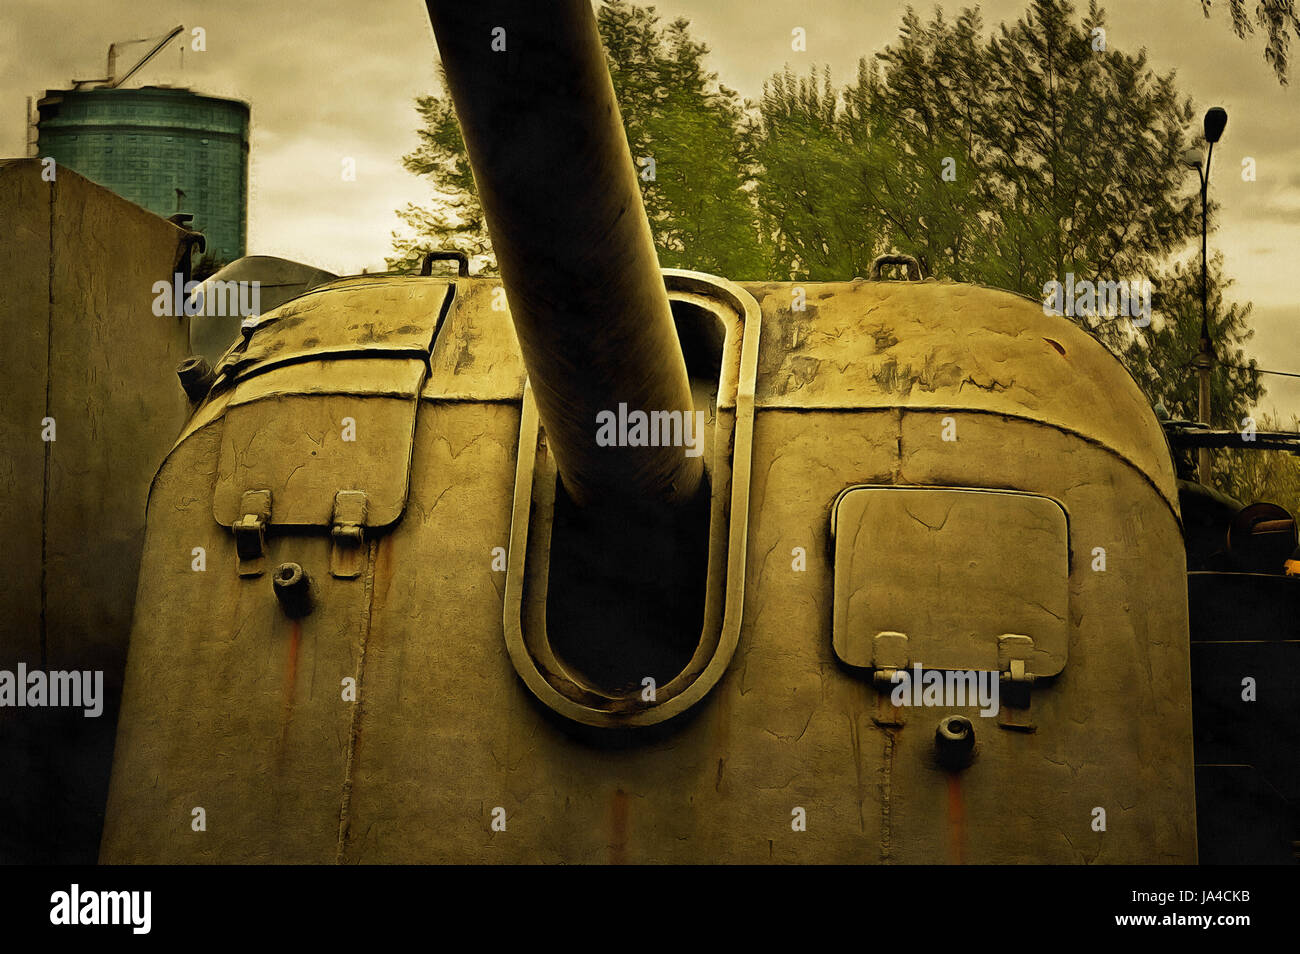 La artillería pesada de ilustraciones Foto de stock